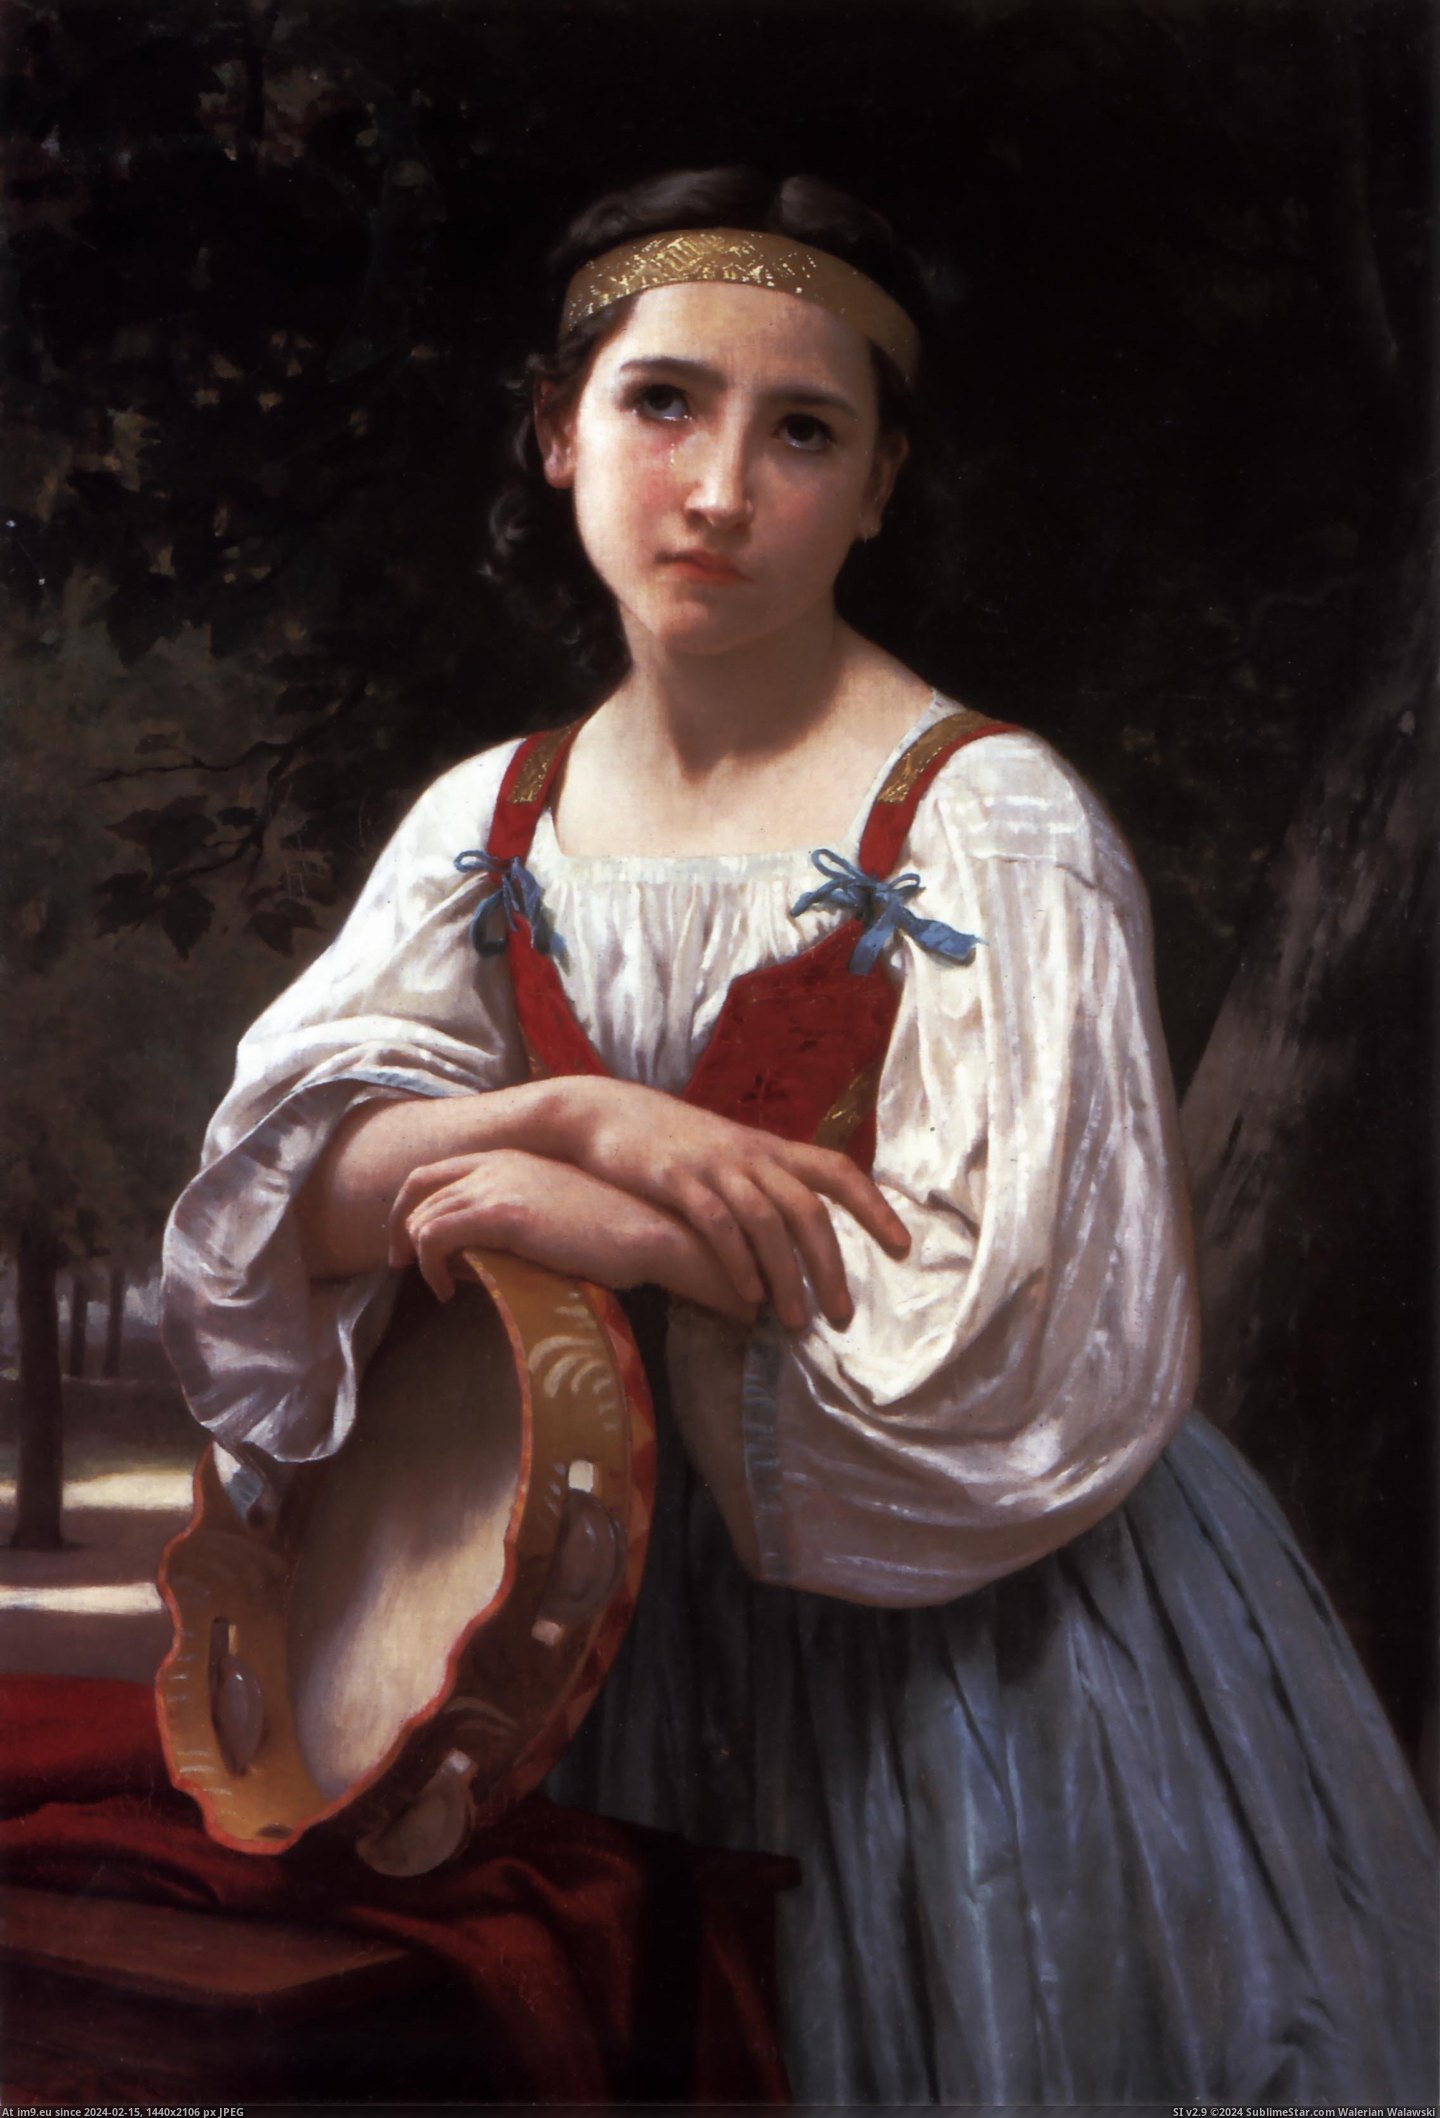 (1867) Bohemienne Au Tambour De Basque - William Adolphe Bouguereau (in William Adolphe Bouguereau paintings (1825-1905))